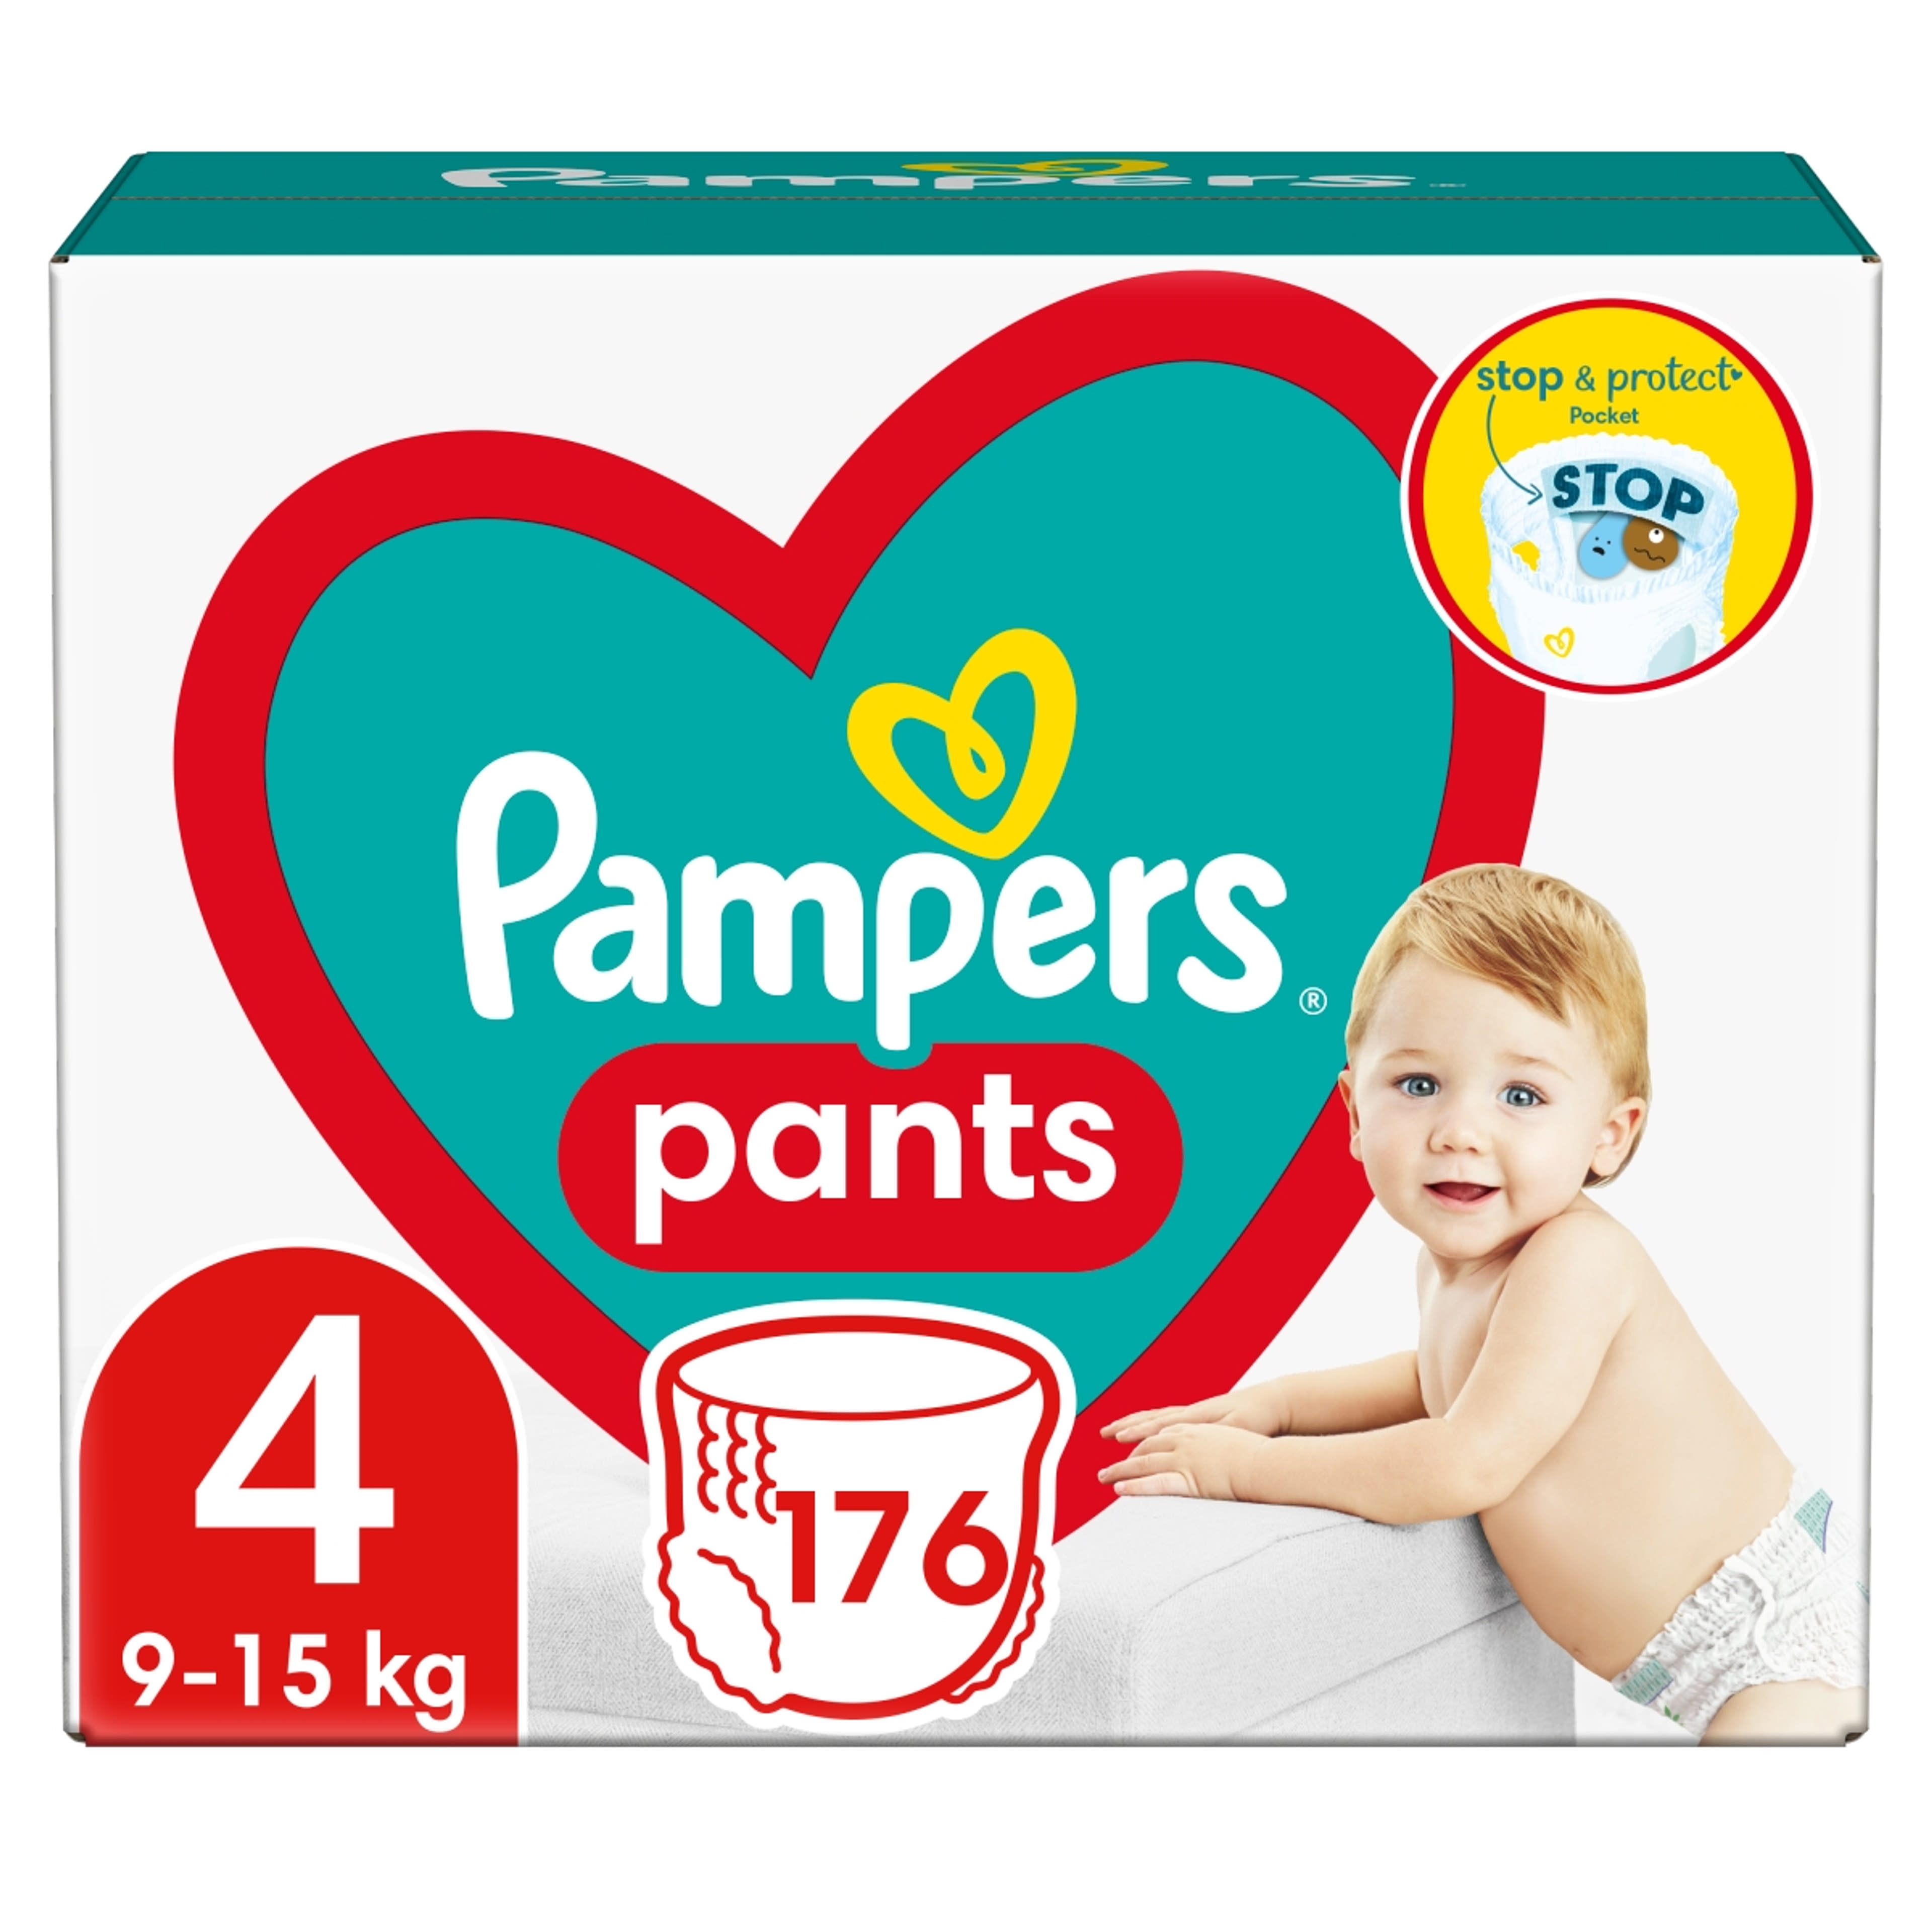 Pampers Pants bugyipelenka monthly pack 4-es 9-15 kg - 176 db